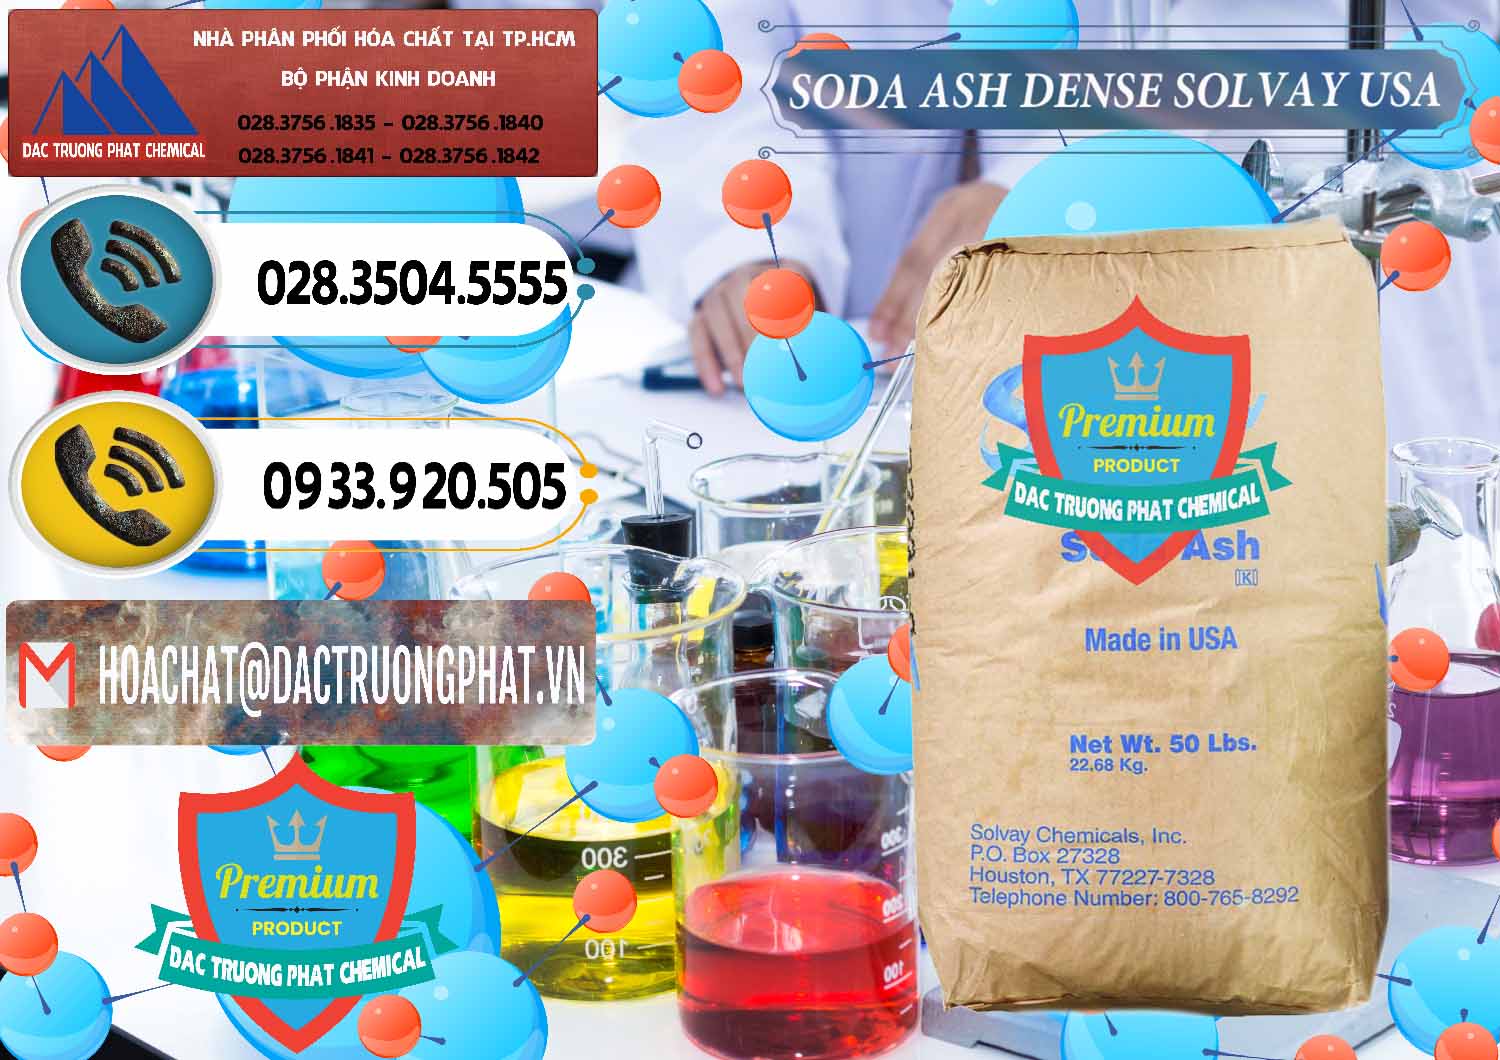 Công ty chuyên bán - cung ứng Soda Ash Dense - NA2CO3 Solvay Mỹ USA - 0337 - Công ty chuyên bán - cung cấp hóa chất tại TP.HCM - hoachatdetnhuom.vn